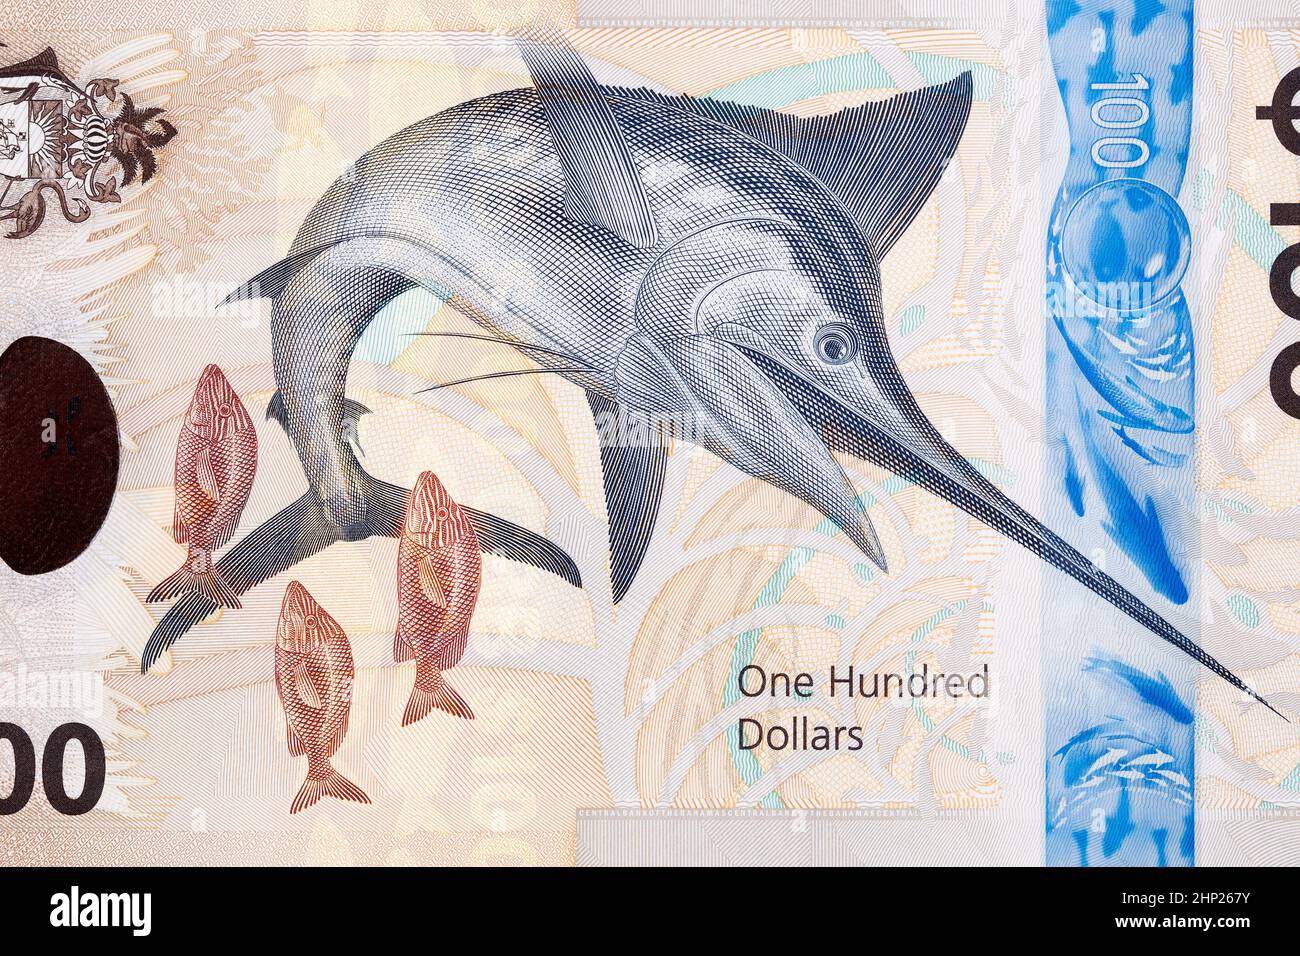 Makaire bleu de l'argent bahamien - dollars Banque D'Images